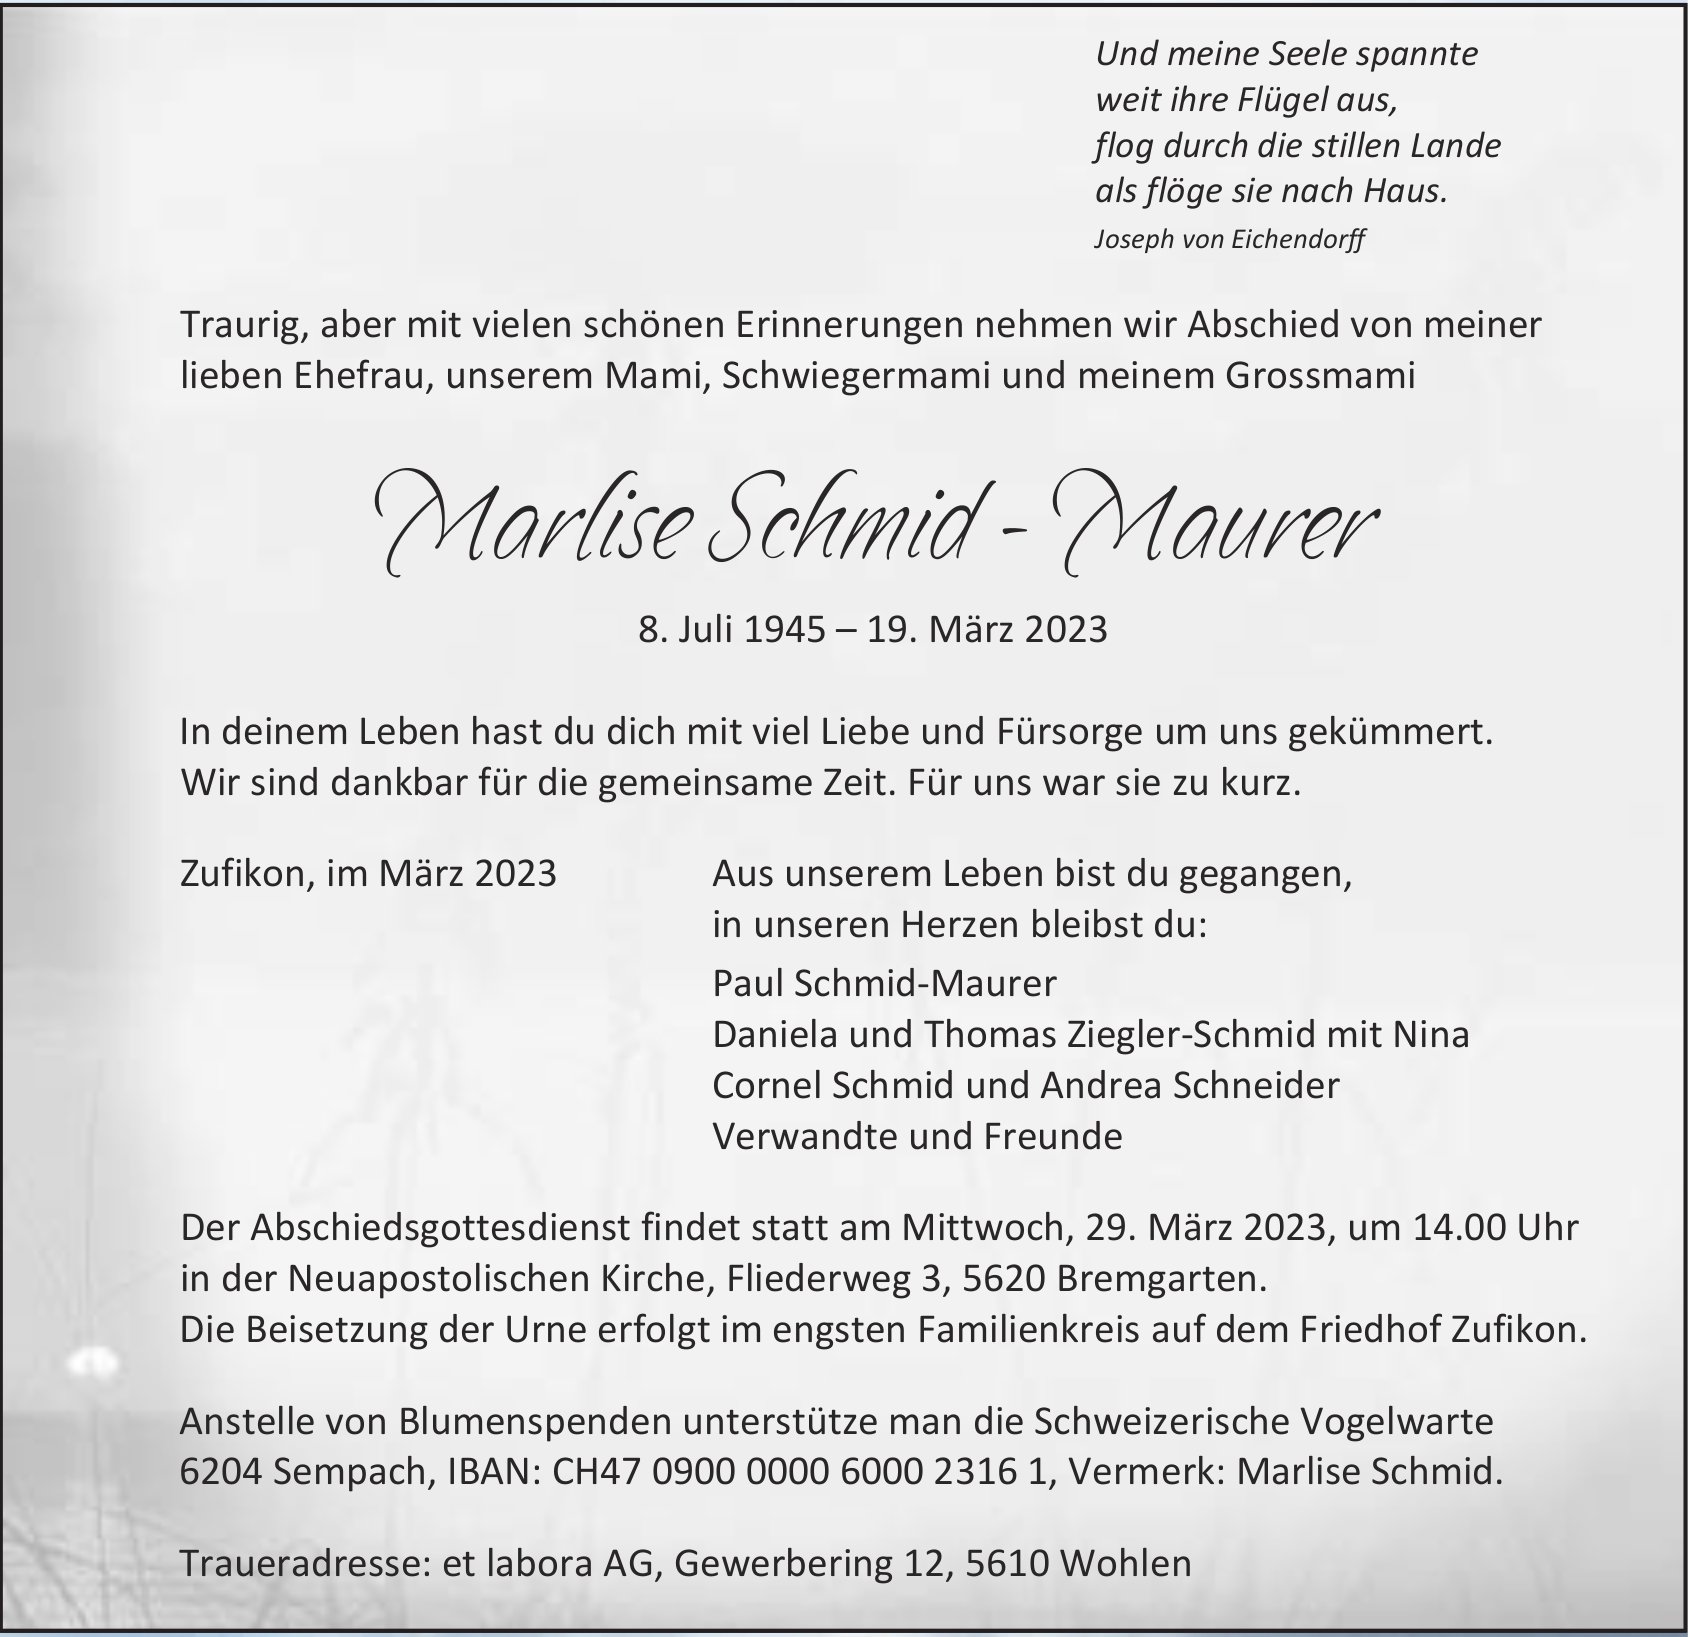 Marlise Schmid - Maurer, März 2023 / TA